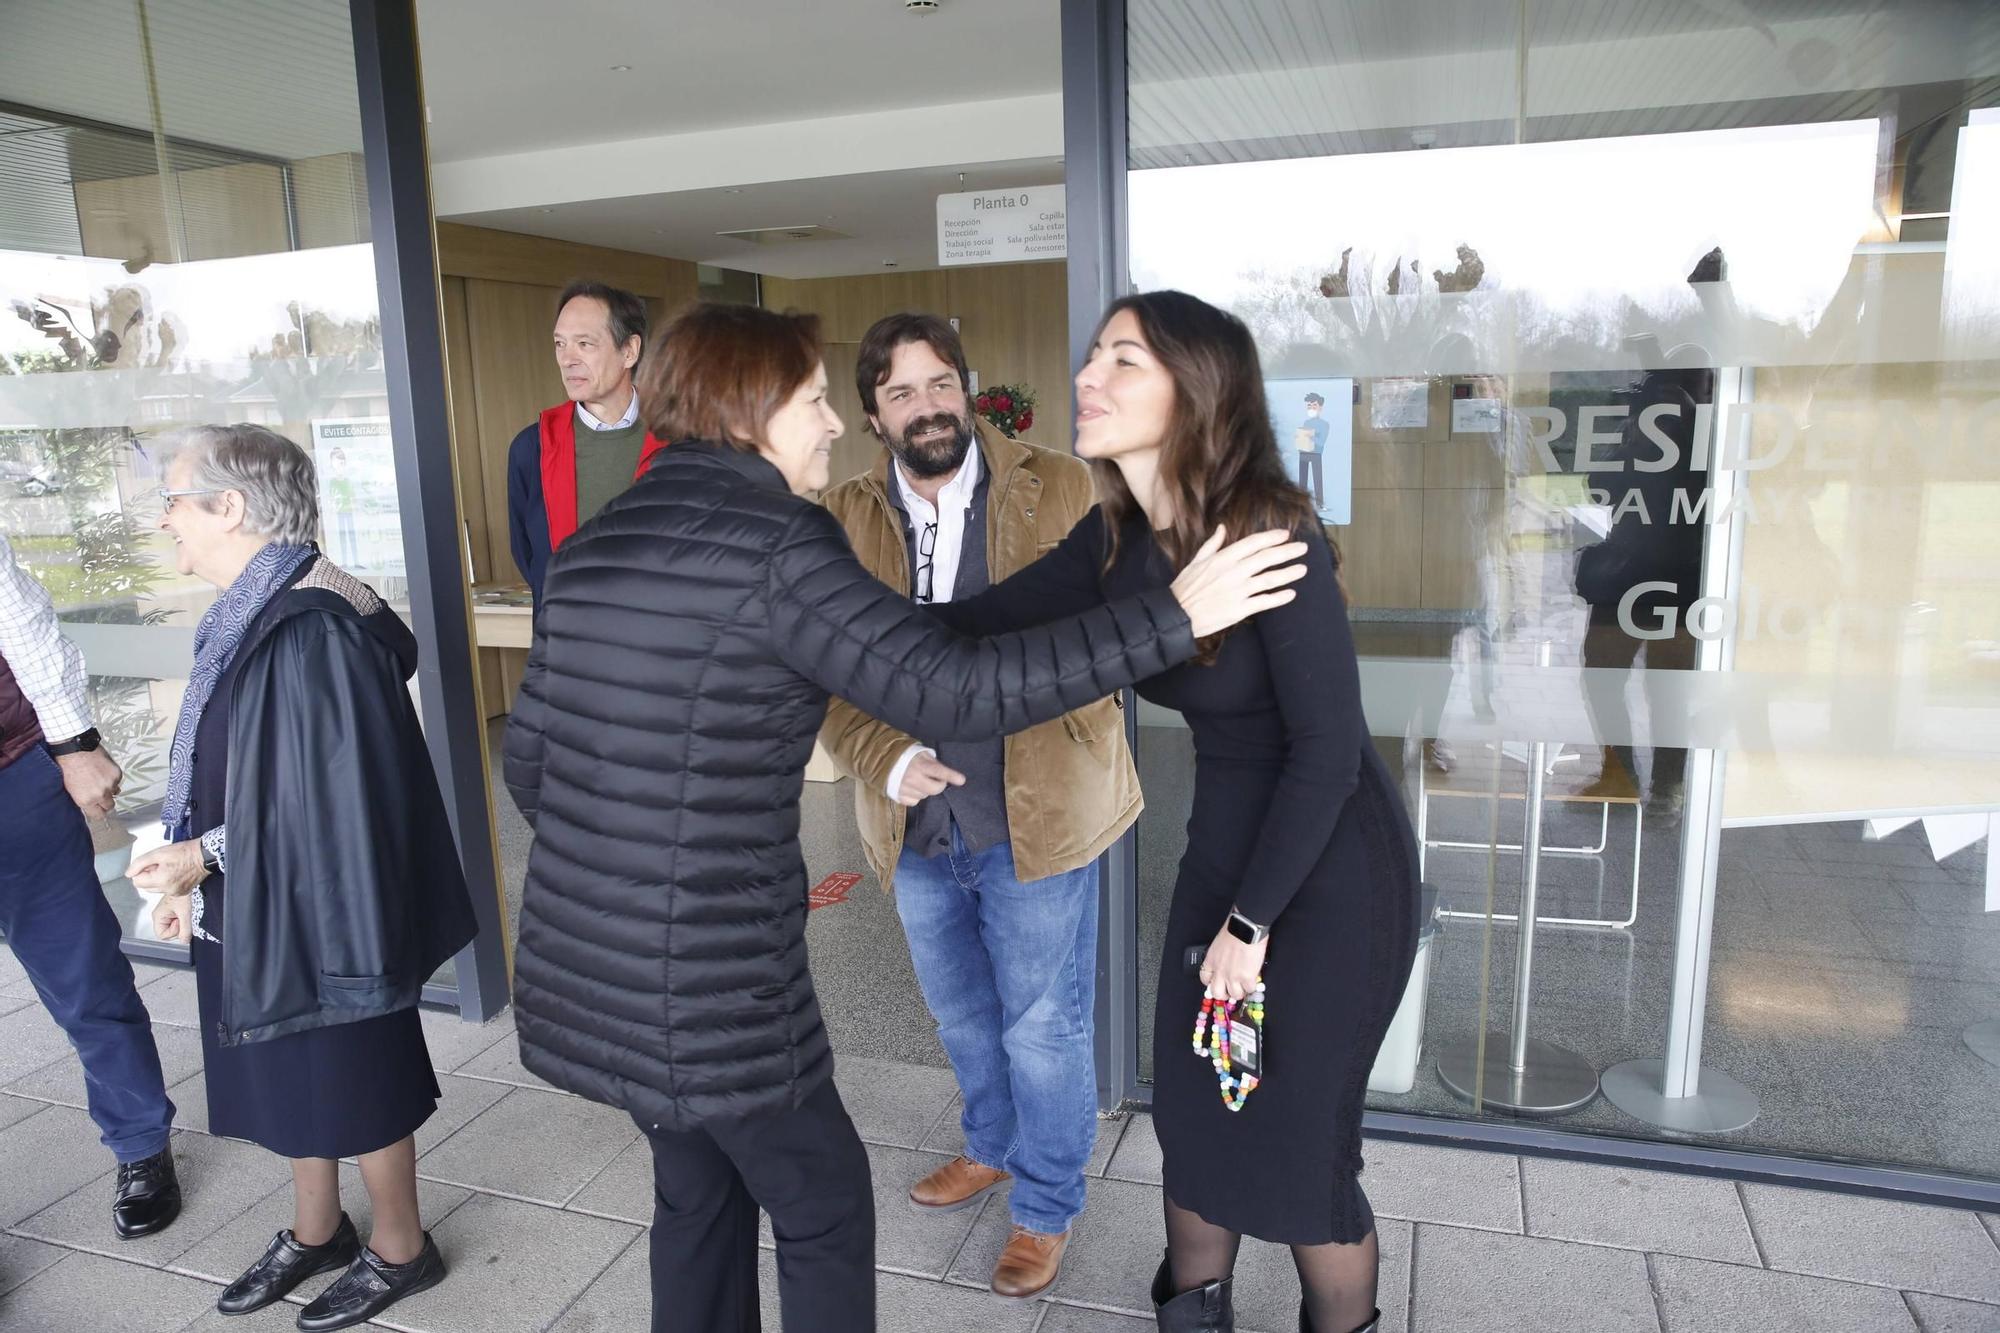 La visita de la Alcaldesa de Gijón a la residencia de mayores "La Golondrína", en imágenes